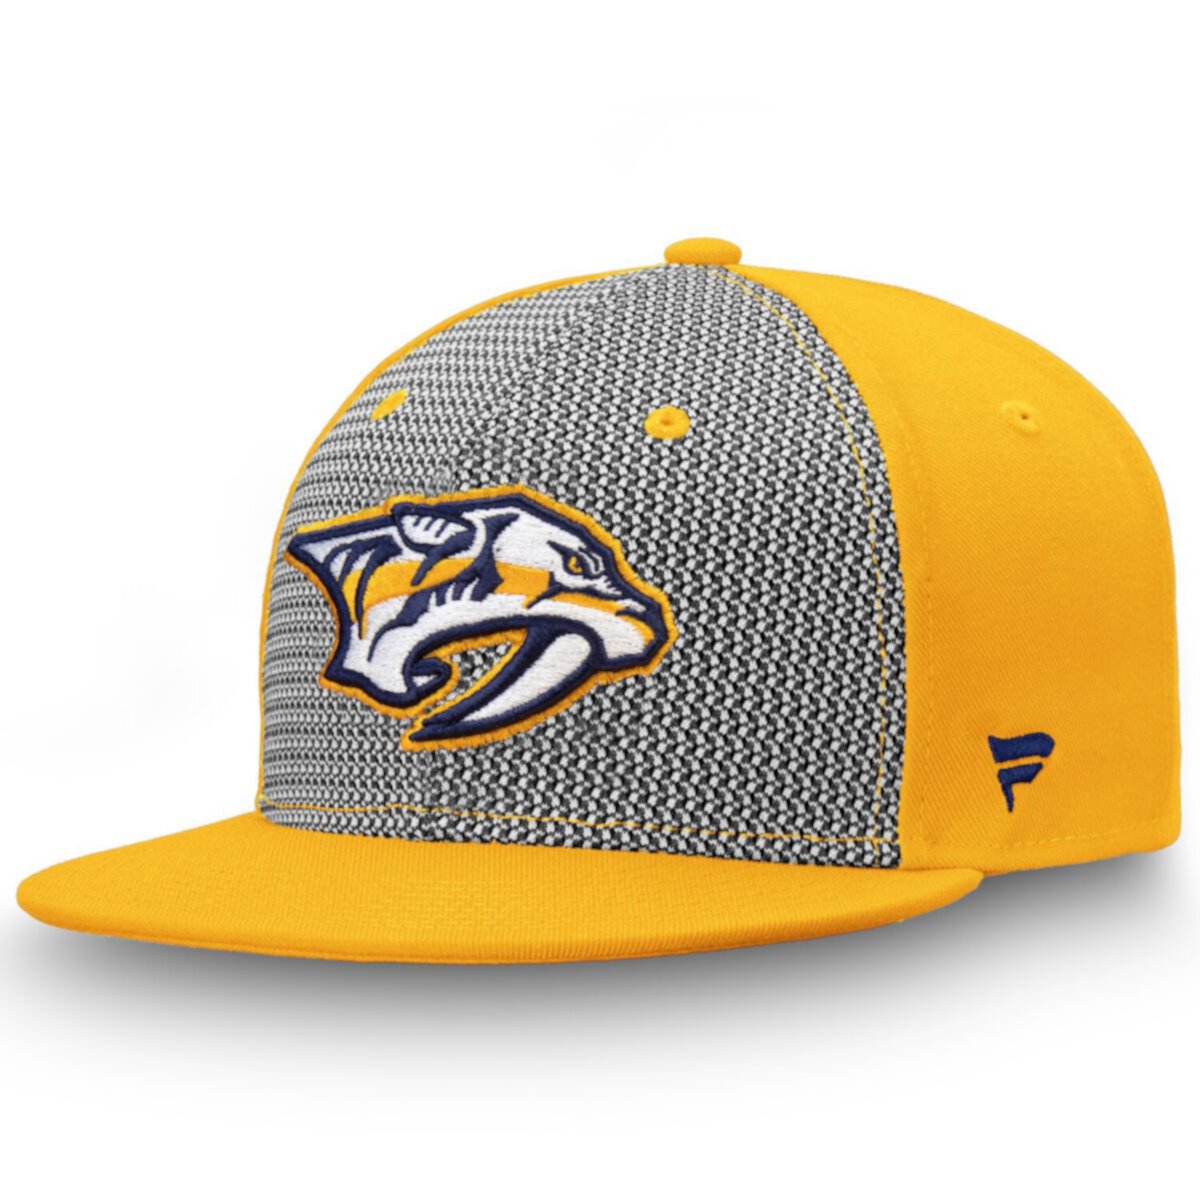 Men's Fanatics Branded Gray/Gold Nashville Predators Versalux Fitted Hat Fanatics